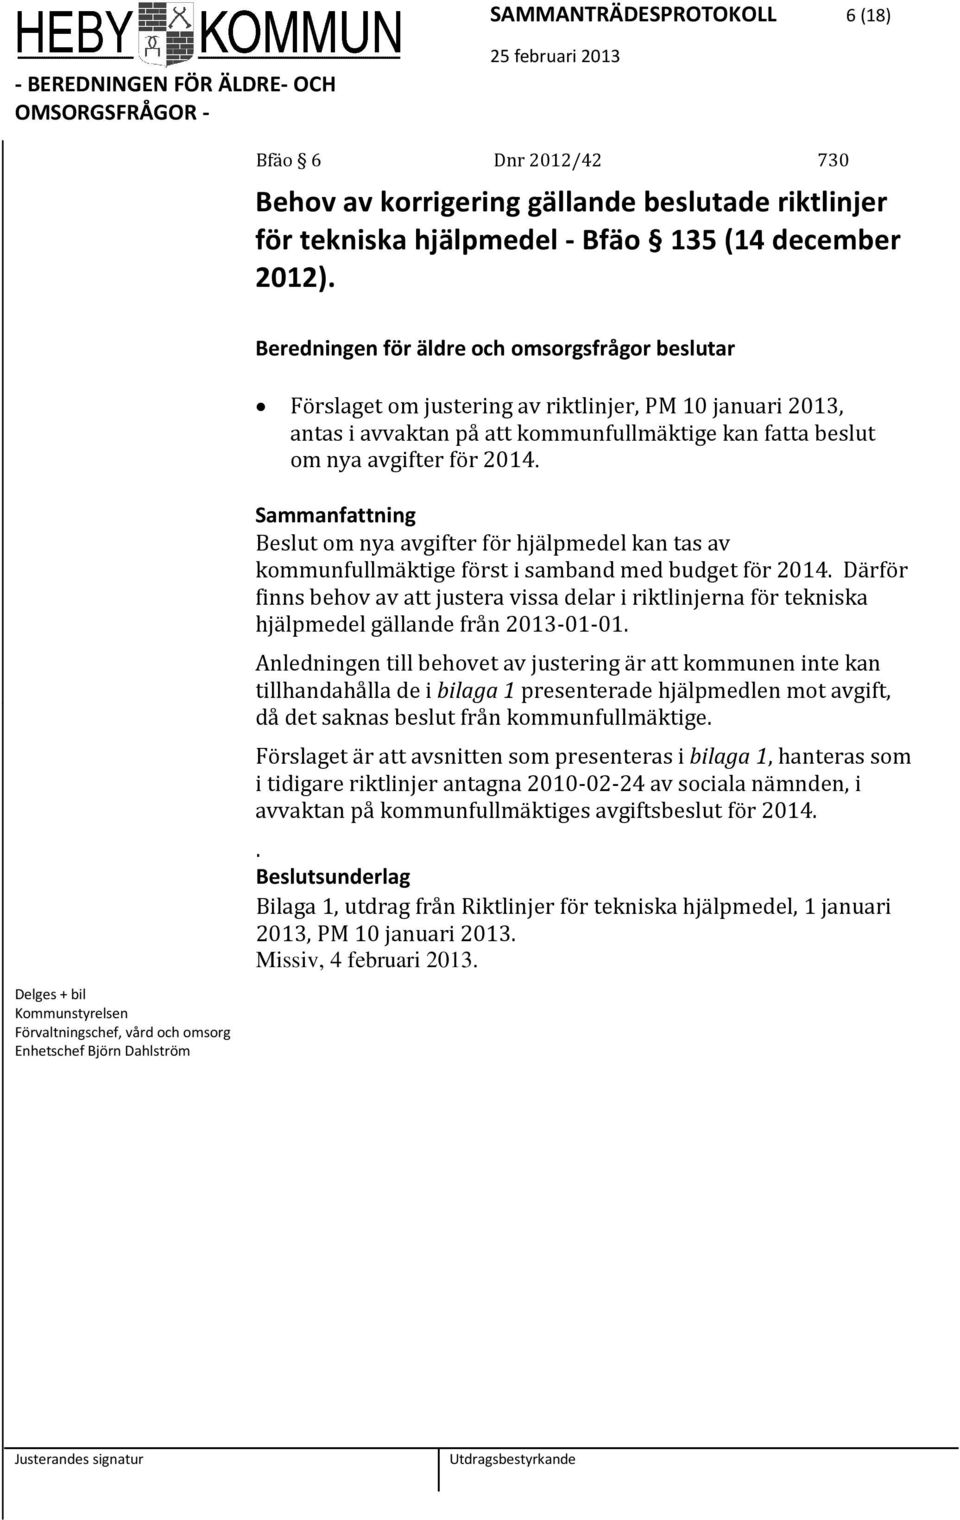 Delges + bil Kommunstyrelsen Förvaltningschef, vård och omsorg Enhetschef Björn Dahlström Beslut om nya avgifter för hjälpmedel kan tas av kommunfullmäktige först i samband med budget för 2014.